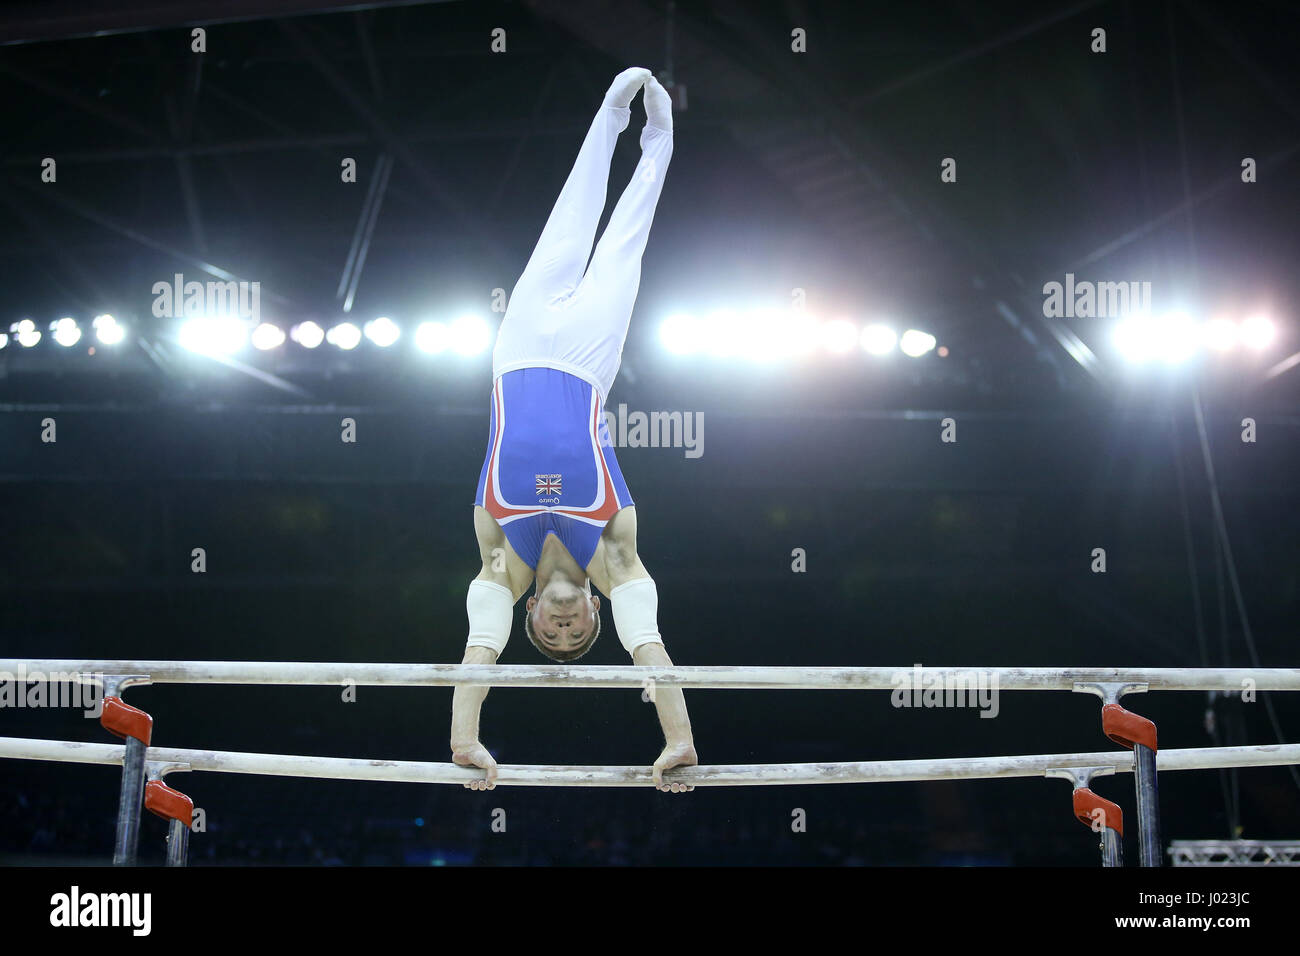 Der Brite Sam Oldham konkurriert am Barren während der World Cup Gymnastik in The O2, London. Stockfoto